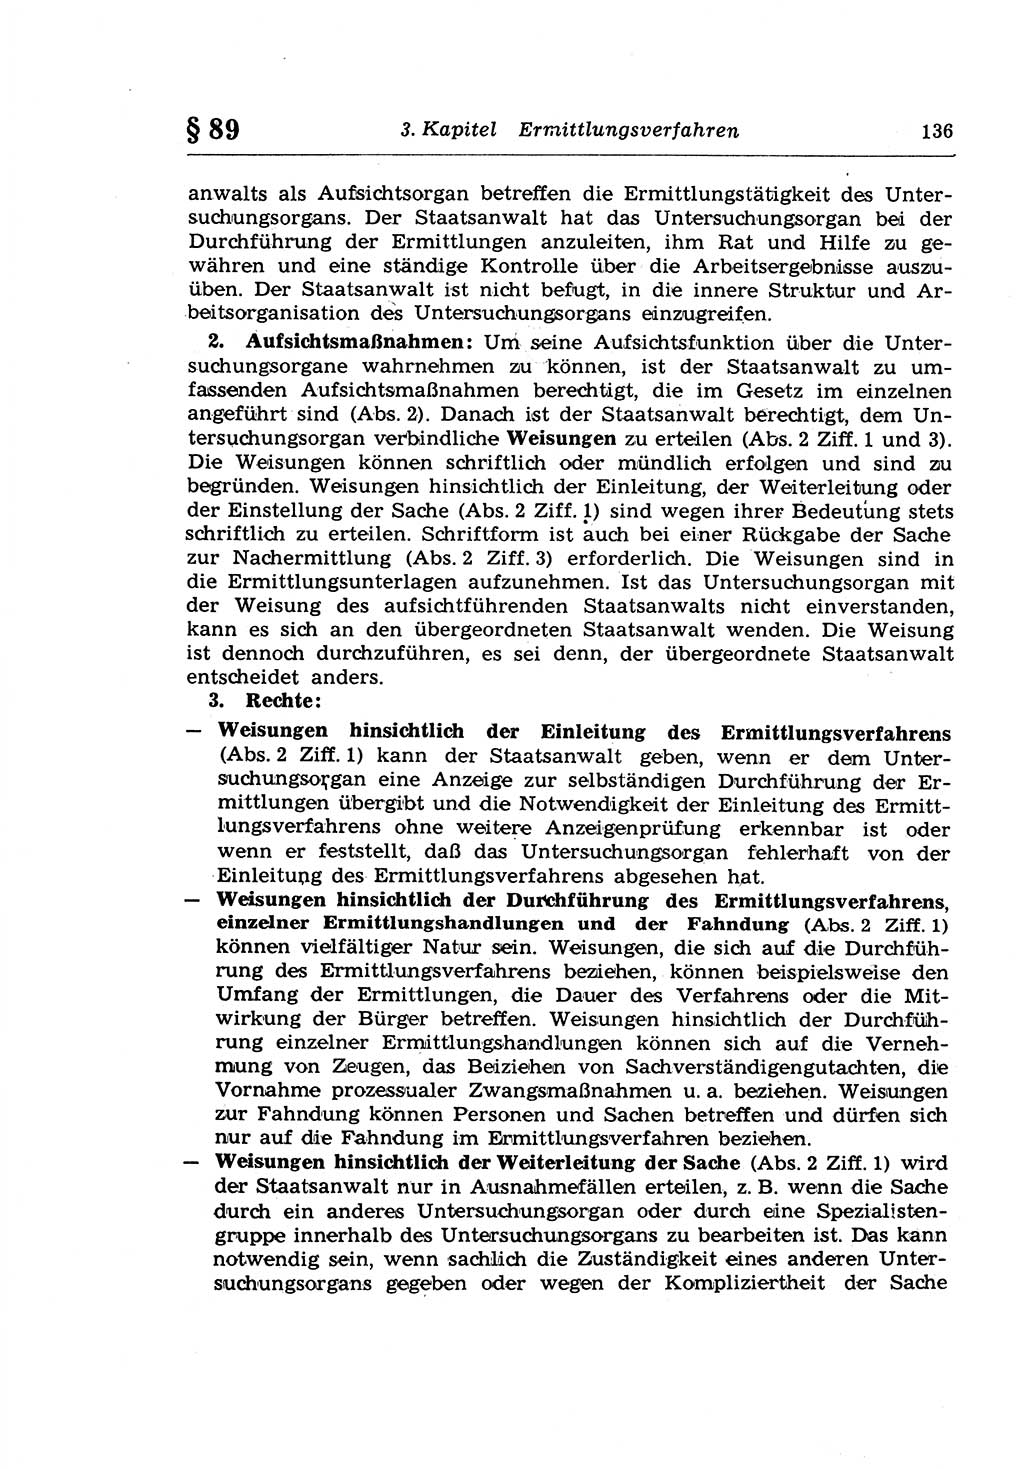 Strafprozeßrecht der DDR (Deutsche Demokratische Republik), Lehrkommentar zur Strafprozeßordnung (StPO) 1968, Seite 136 (Strafprozeßr. DDR Lehrkomm. StPO 19688, S. 136)